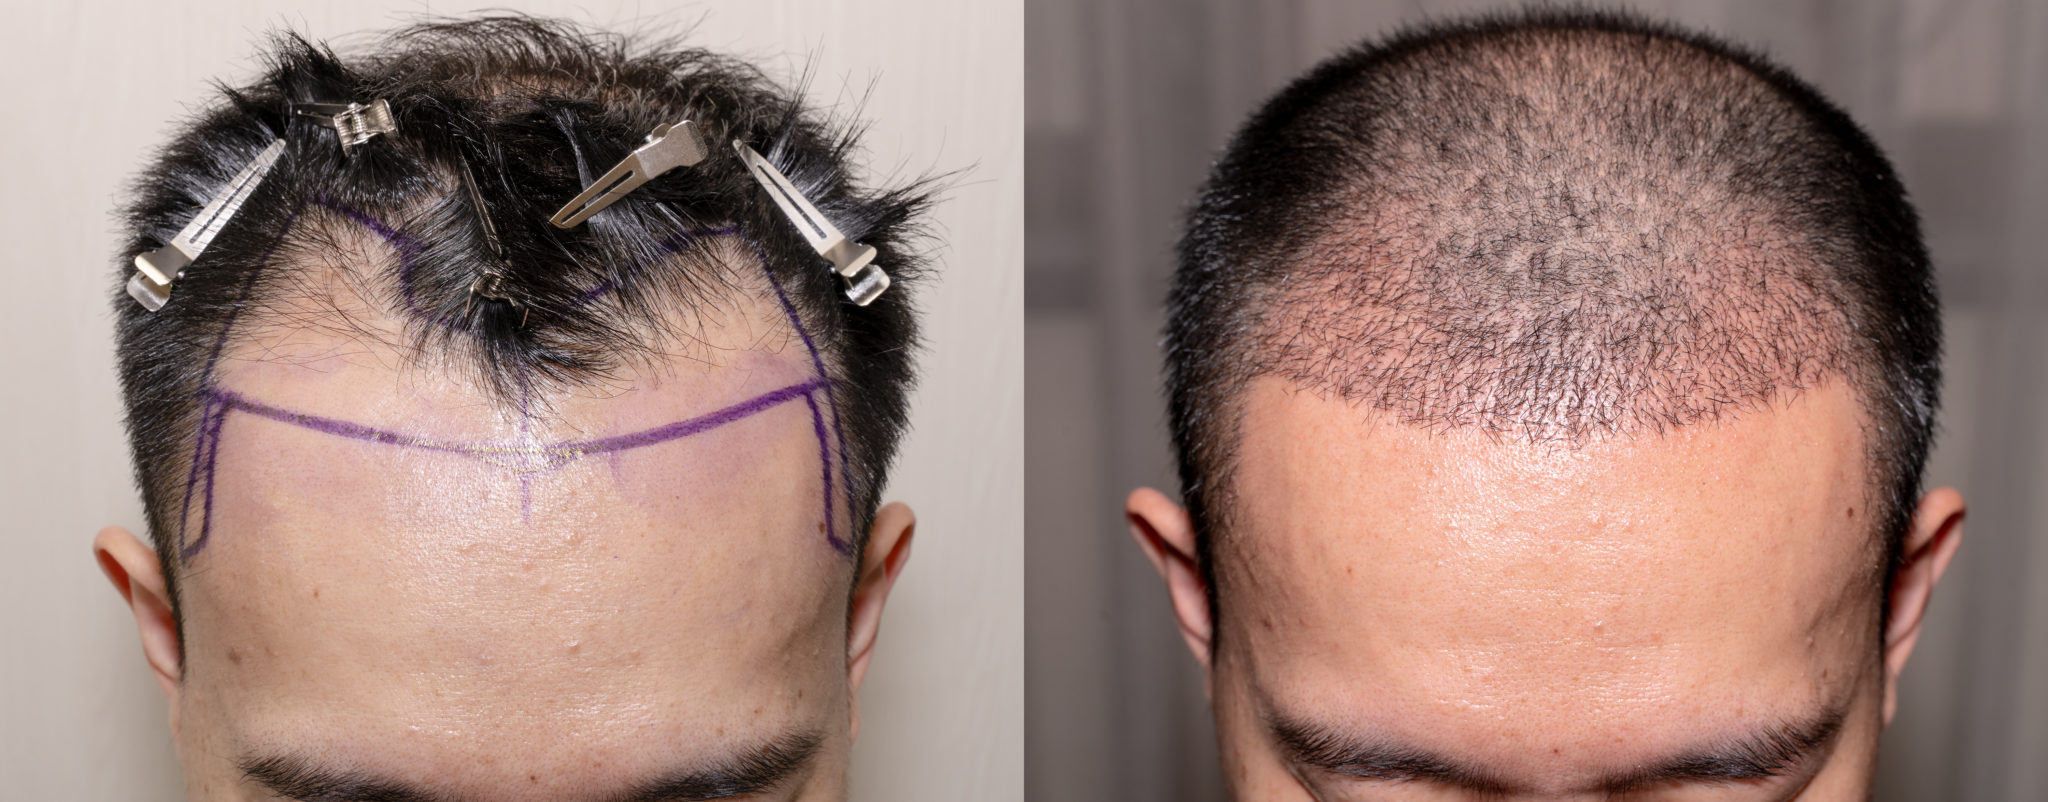 Форум после пересадки. Голова после пересадки волос. Шрамы после пересадке волос. Трансплантация волос с затылка.